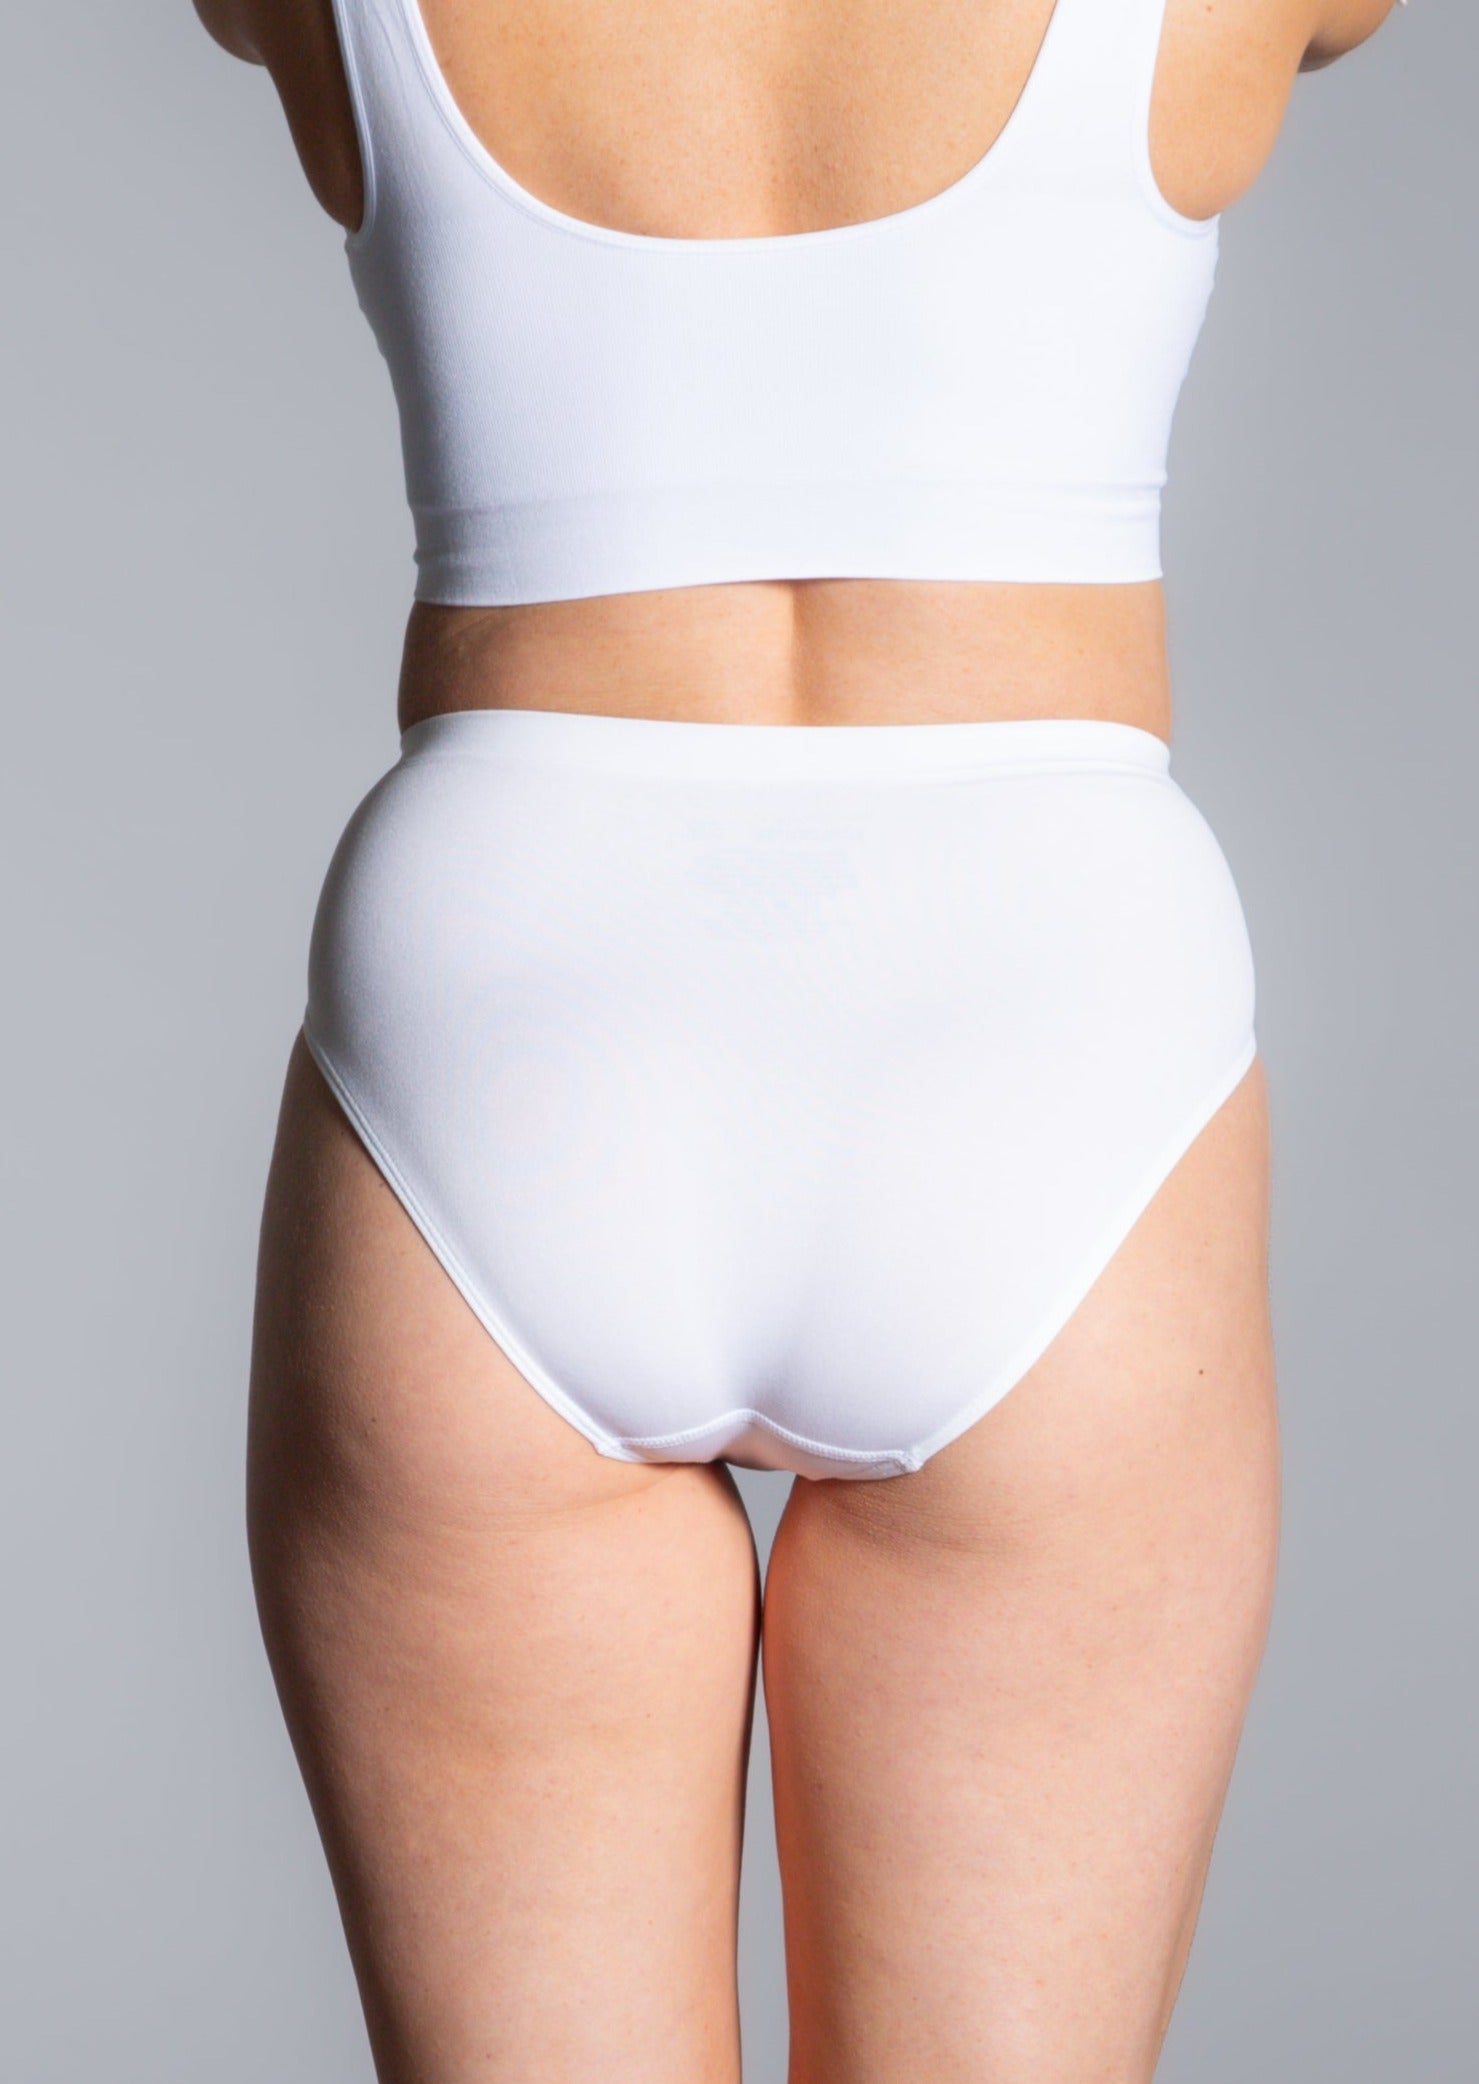 Women's Rhonda Shear 4230 Ahh High Waisted Seamless Brief Panty (White L) 